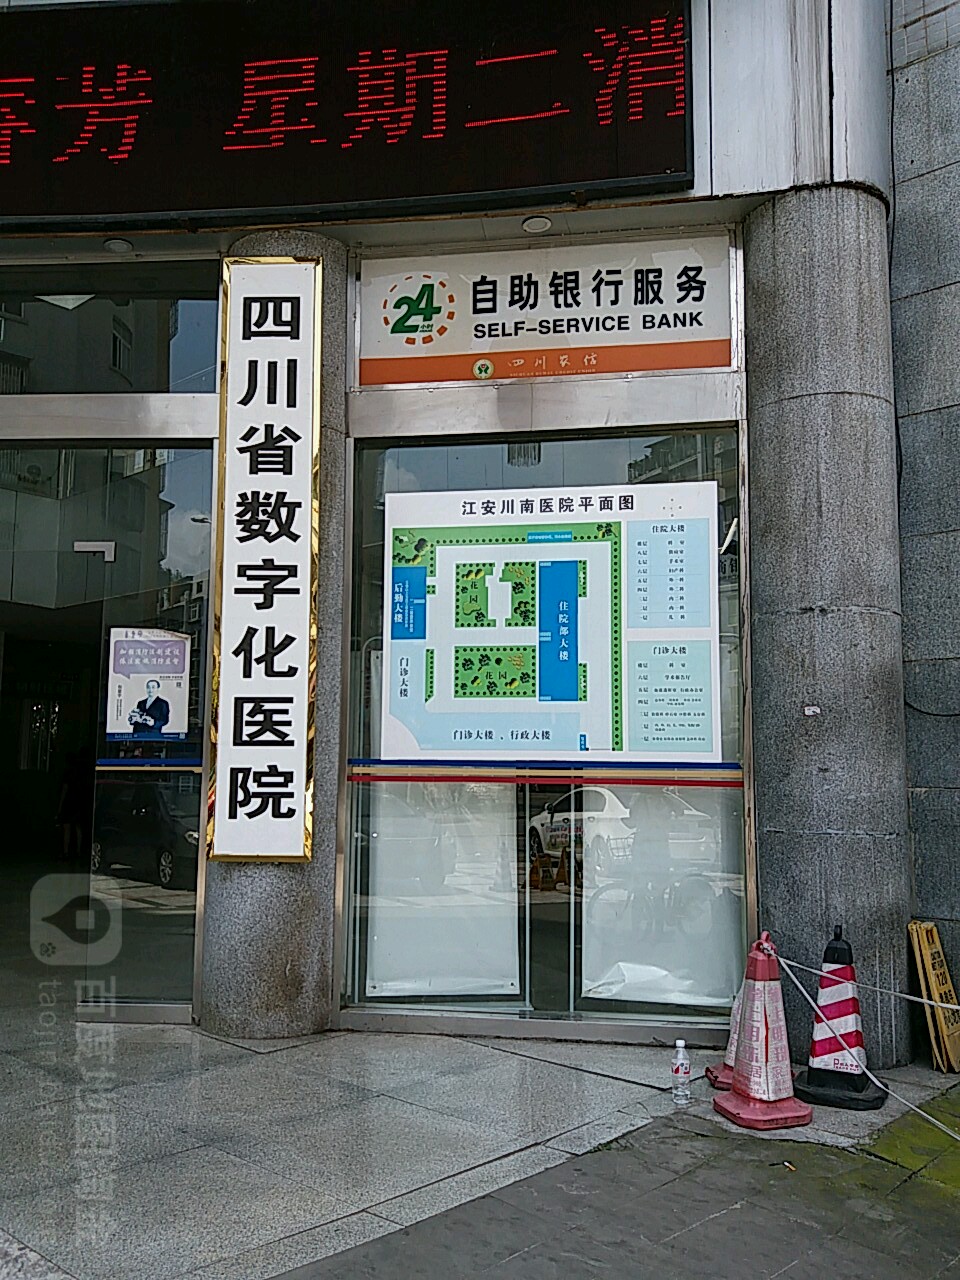 江安竹海农商银行24小时自助银行服务